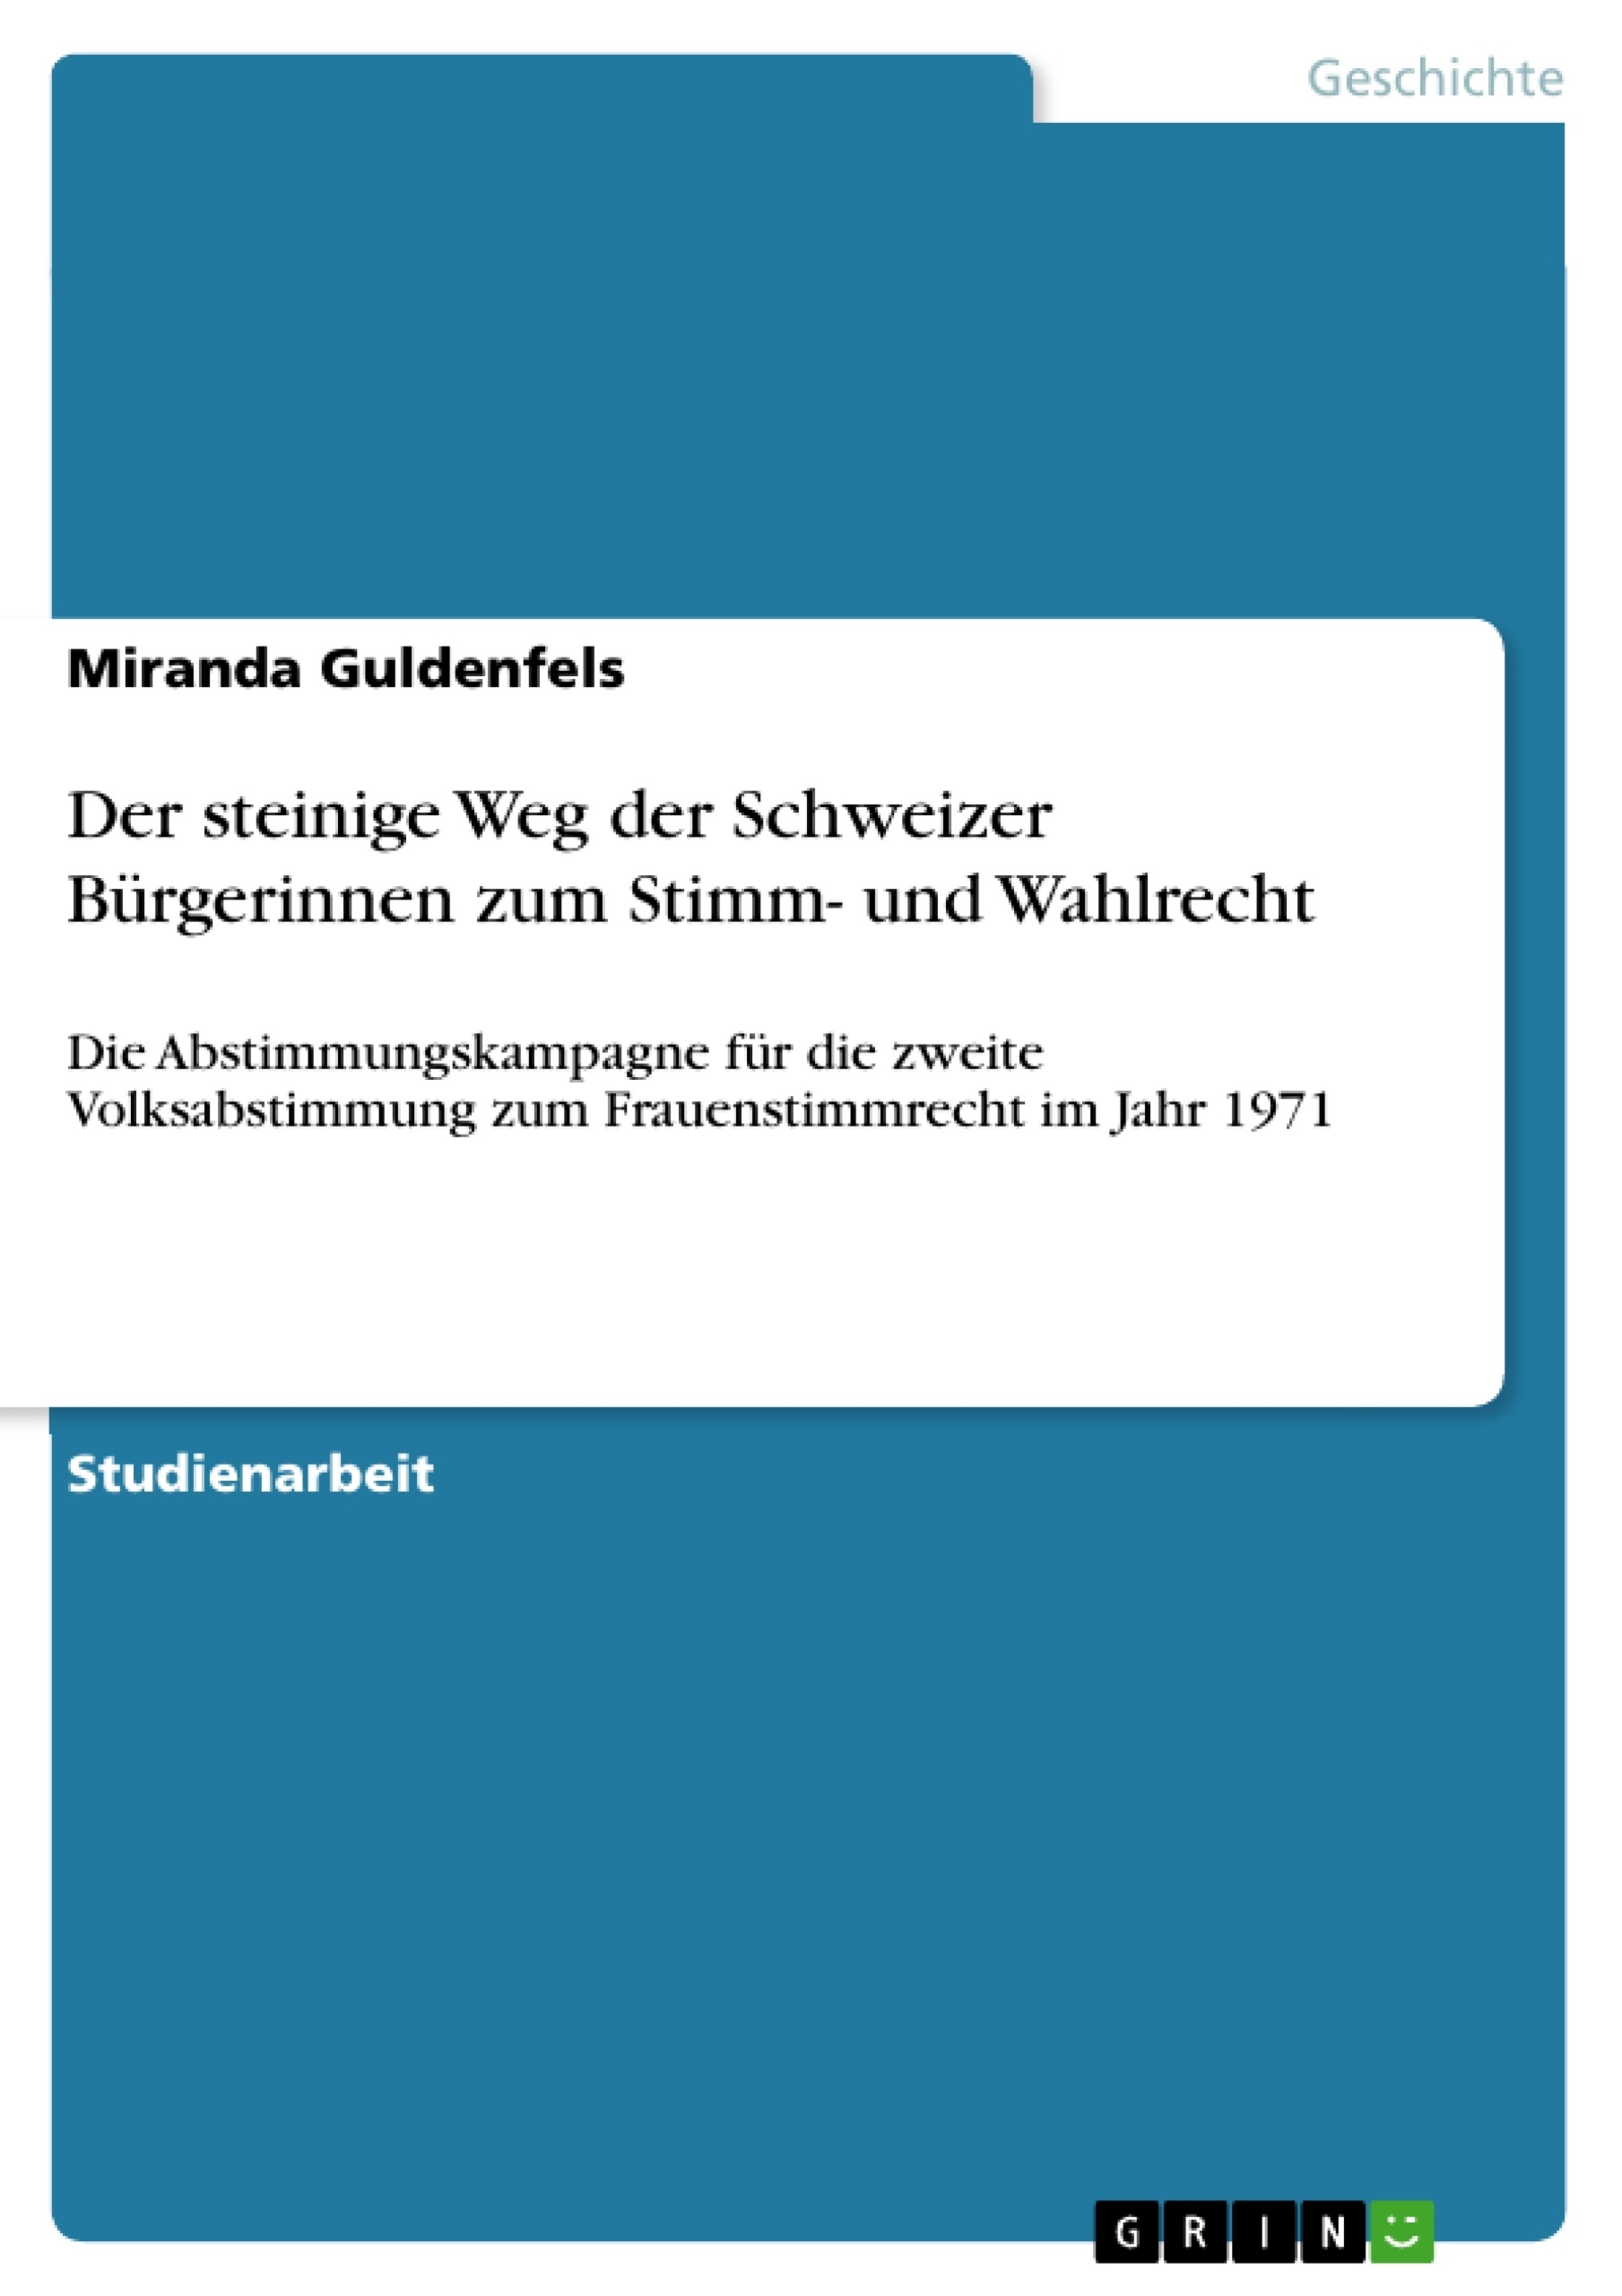 Title: Der steinige Weg der Schweizer Bürgerinnen  zum Stimm- und Wahlrecht